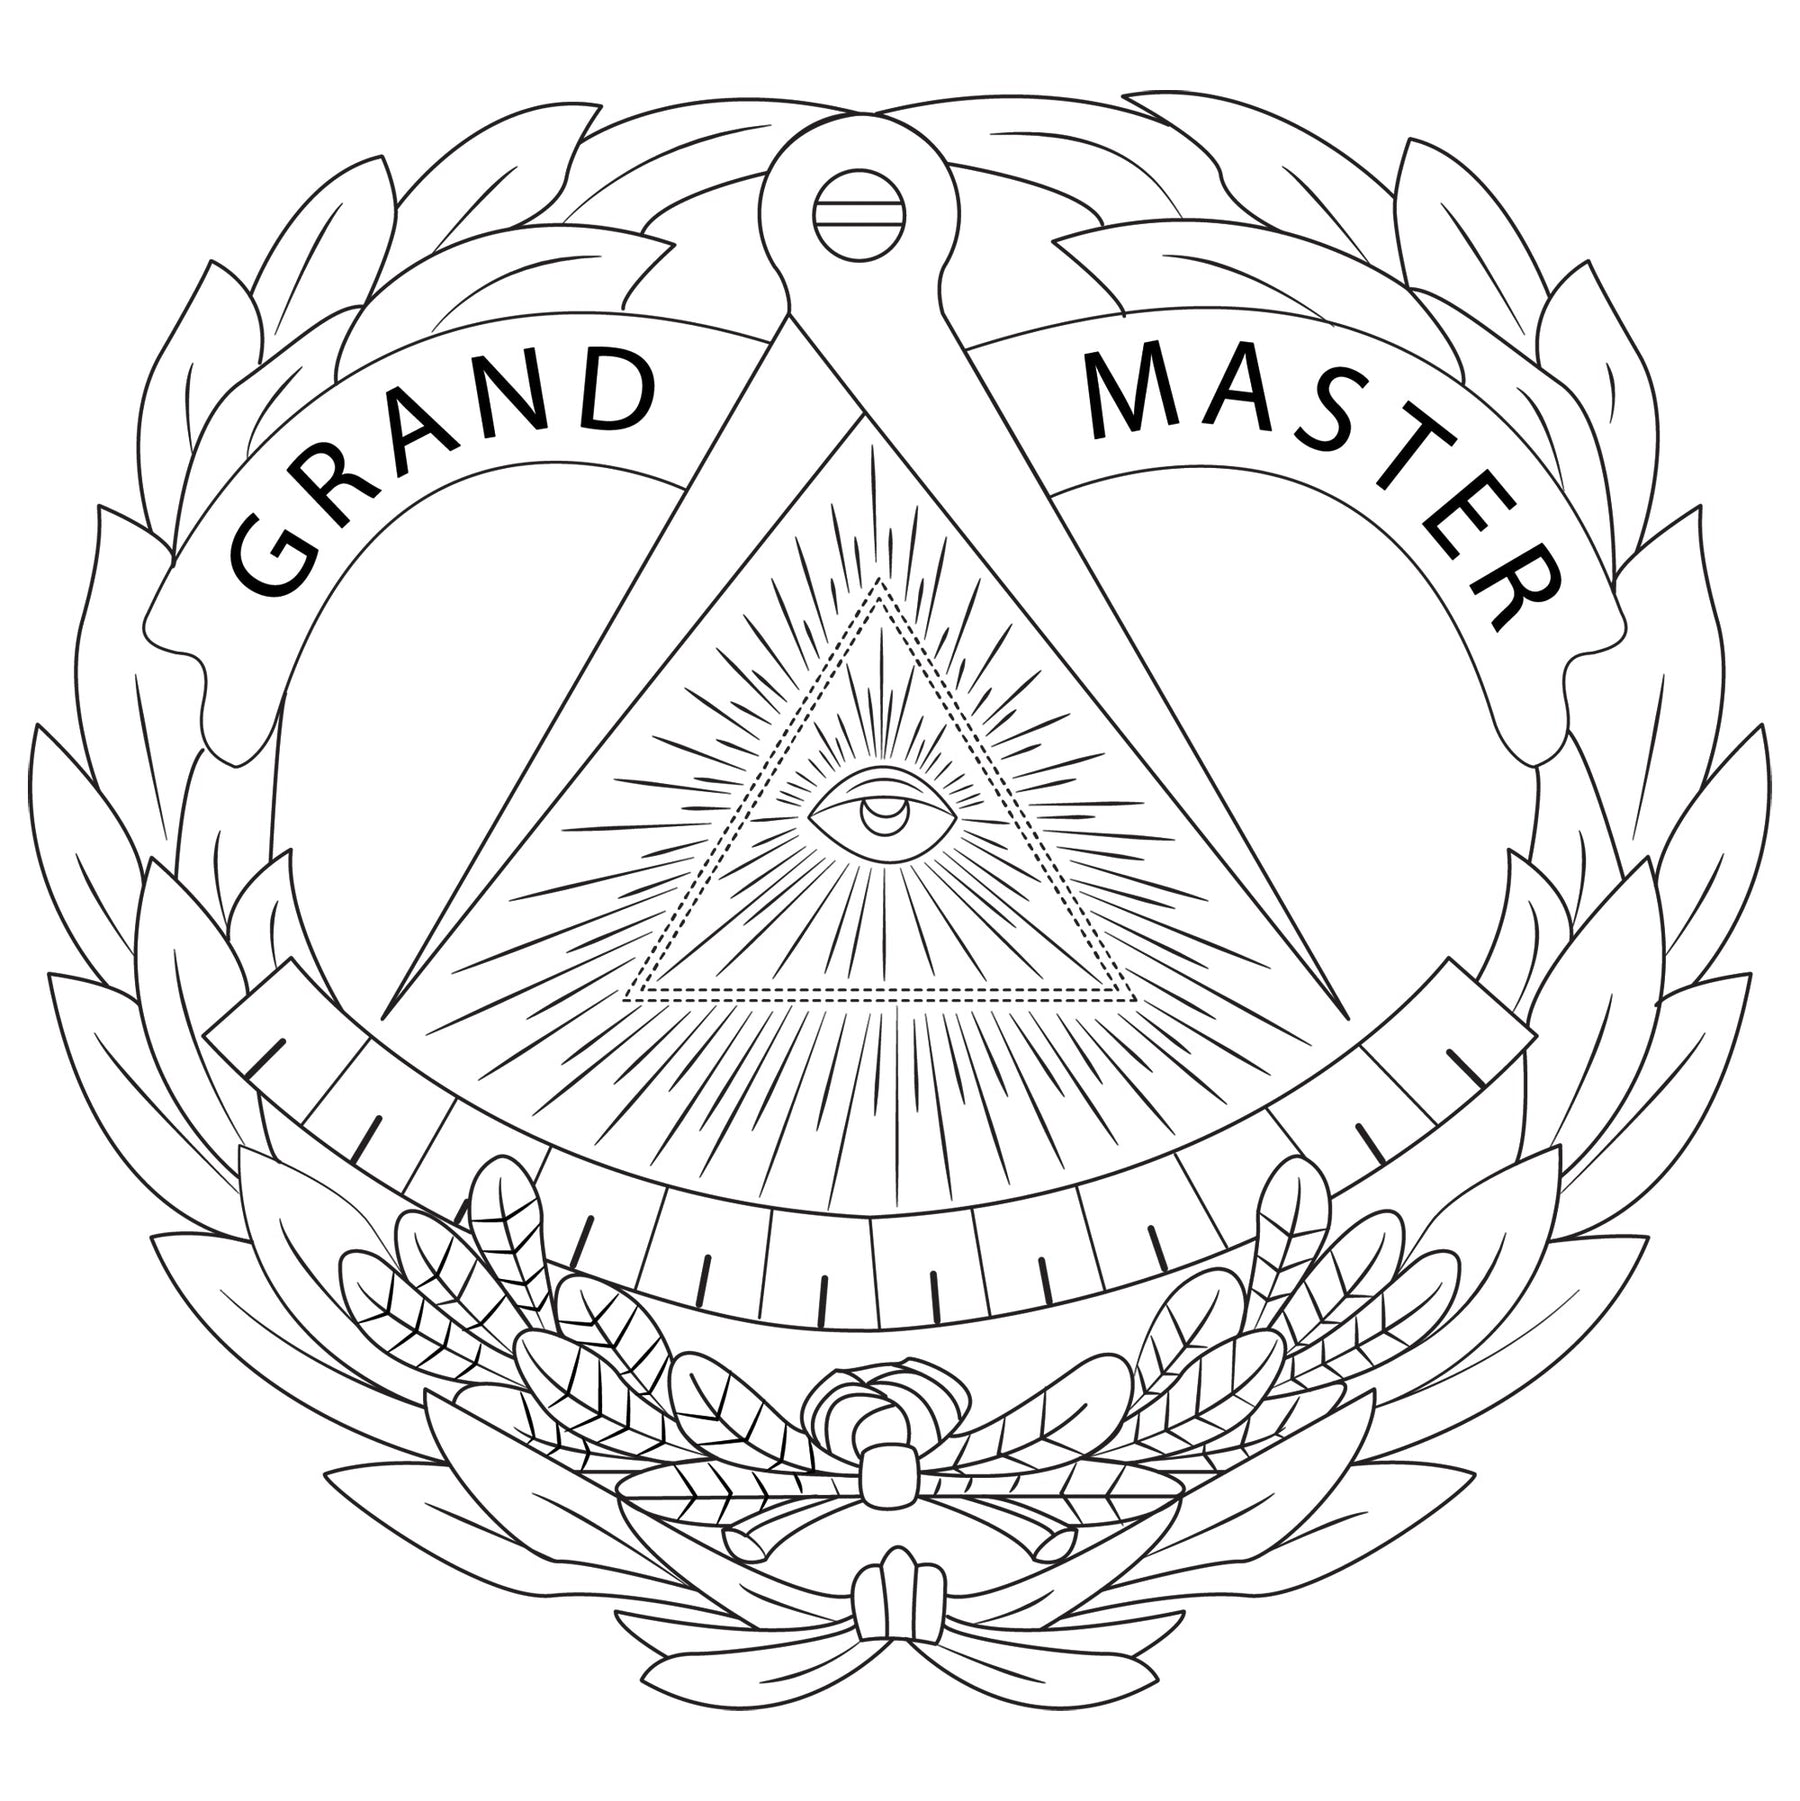 Grand Master Blue Lodge Seatbelt Cover - White & Gold - Bricks Masons